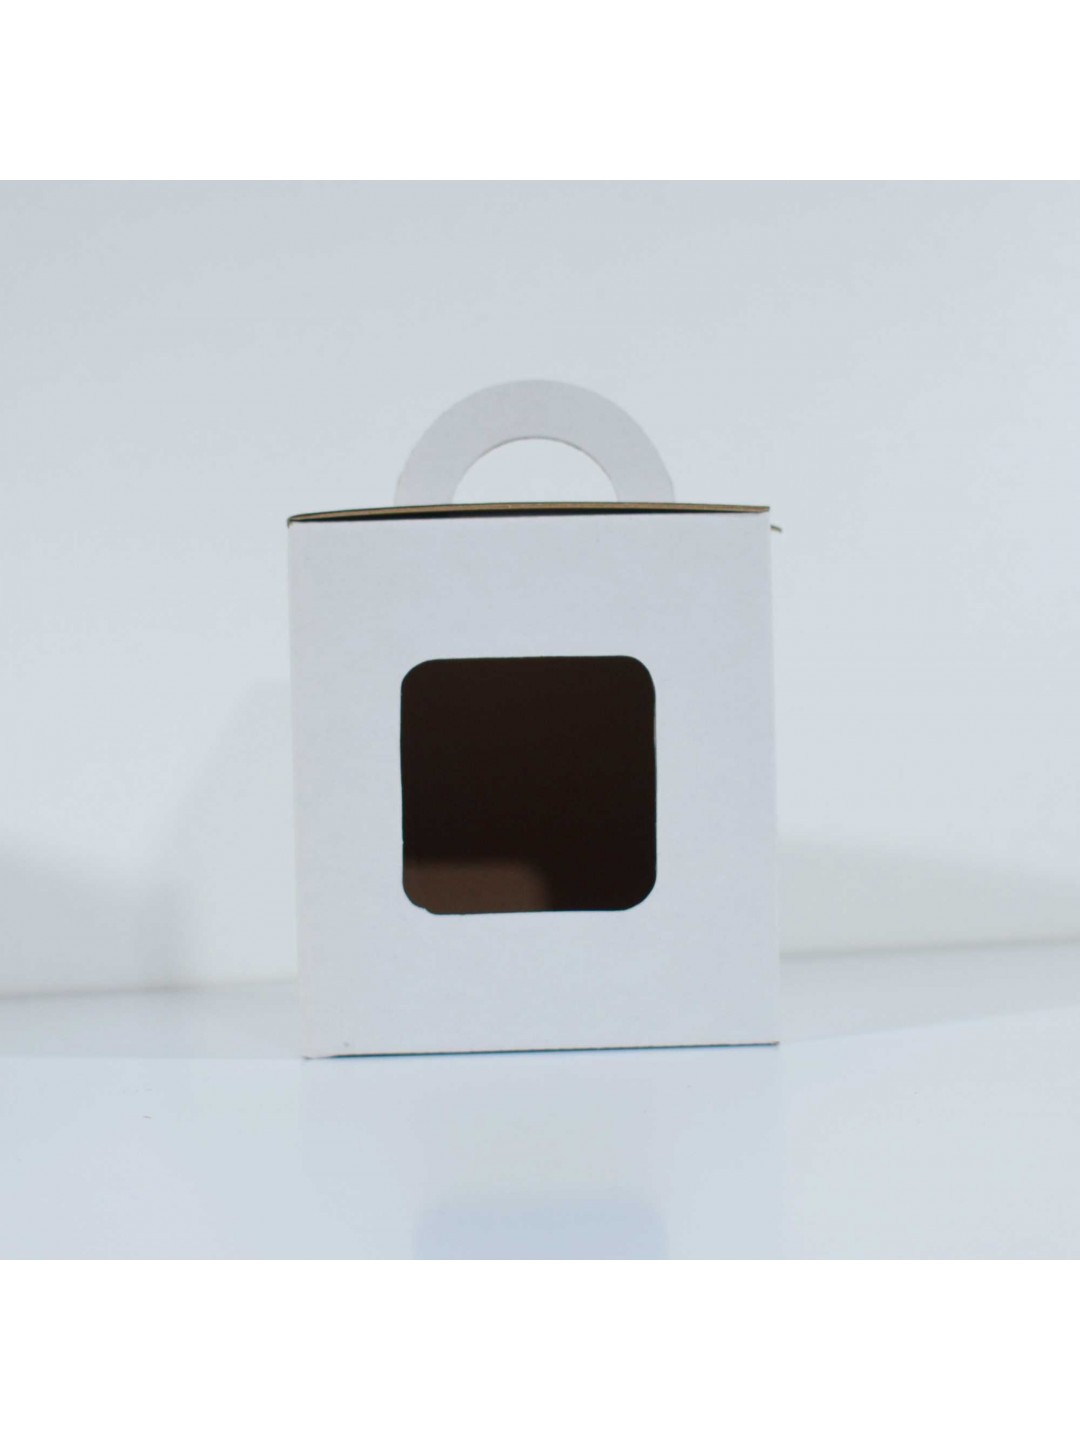 110x110x120 mm Bela kartonska kutija za šolju